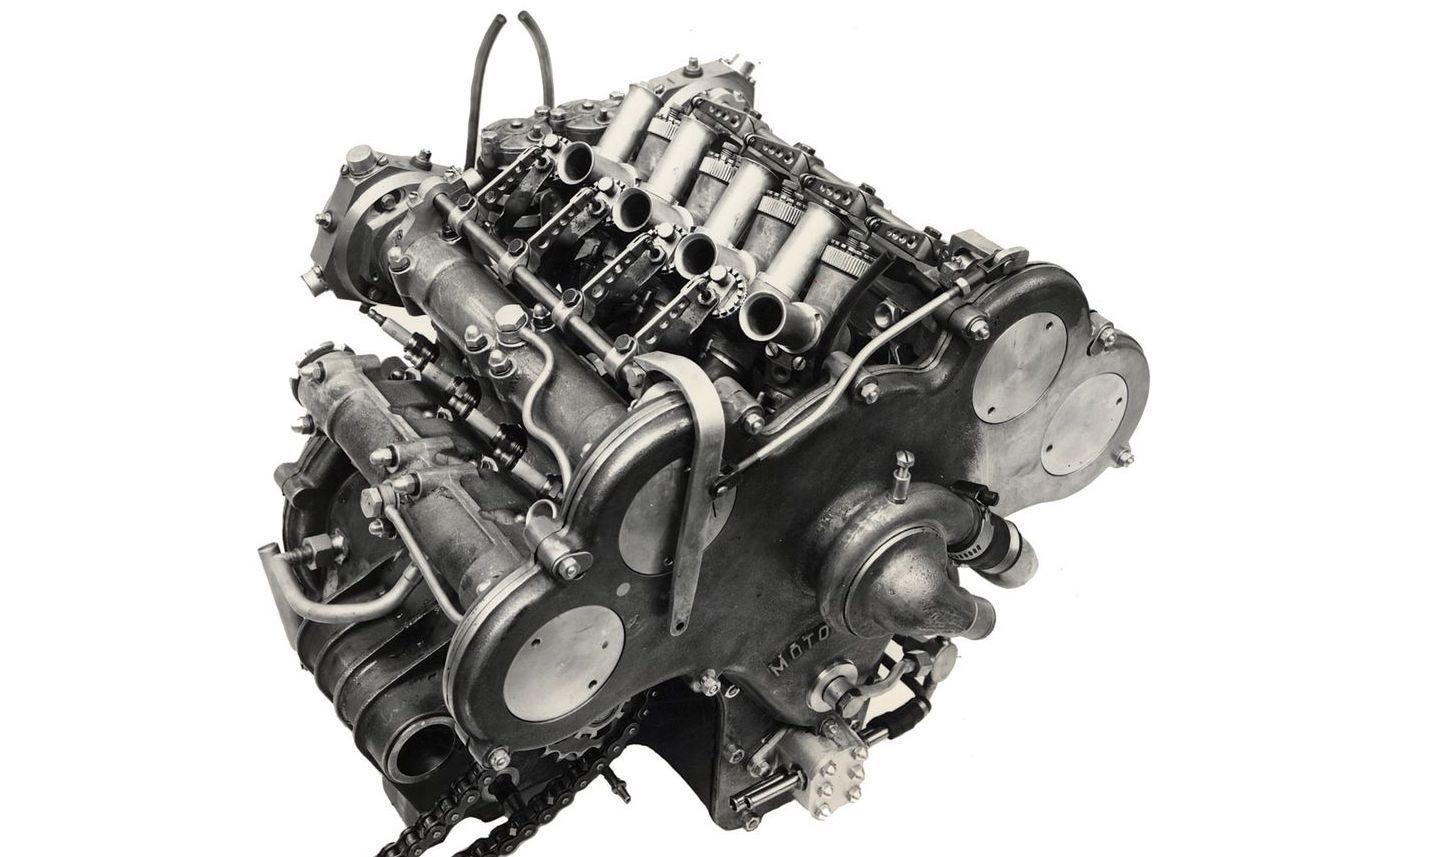 Moto Guzzi 500cc V8 engine